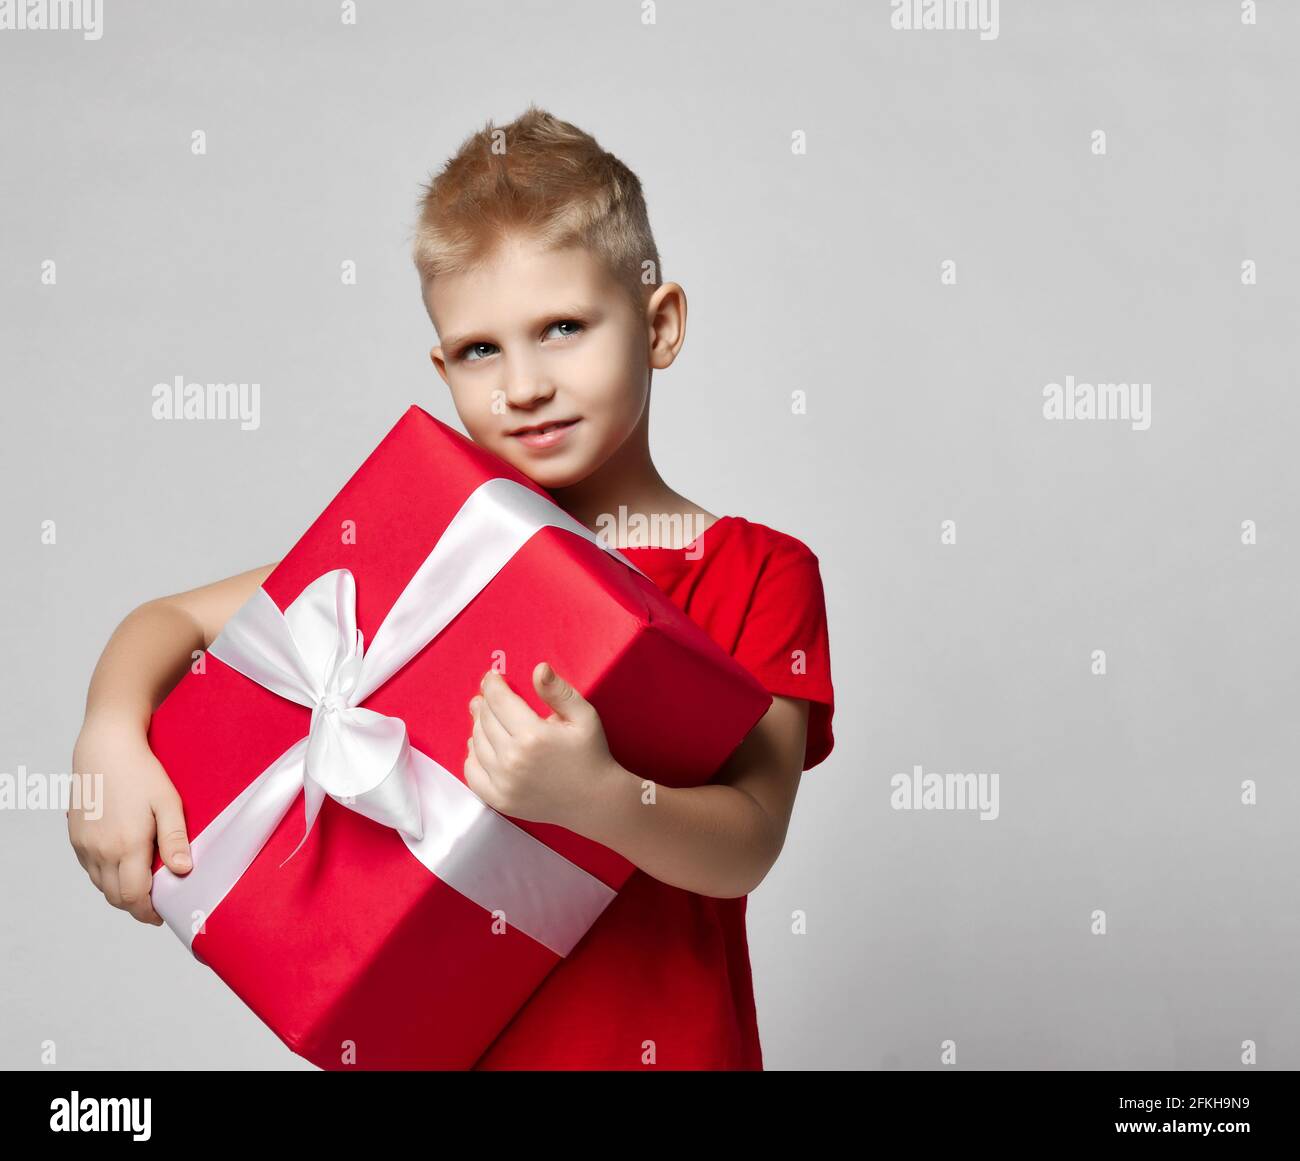 Retrato de niño alegre en una camiseta roja que sostiene una gran caja de regalo con cinta en las manos, llevándola Foto de stock